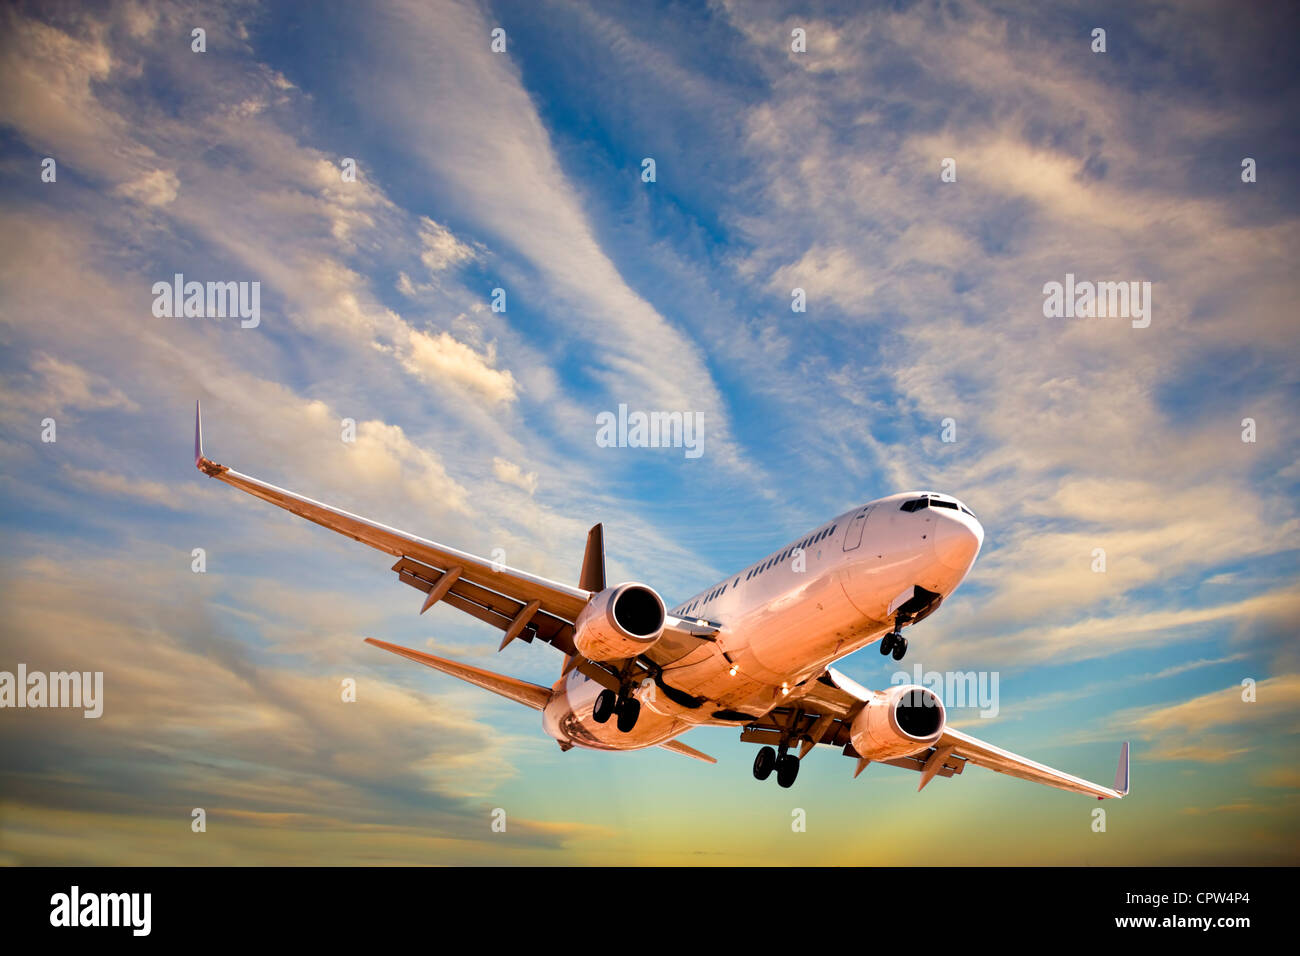 Flugzeug herein, als die letzten Strahlen der Sonne am Himmel leuchten zu landen. Stockfoto